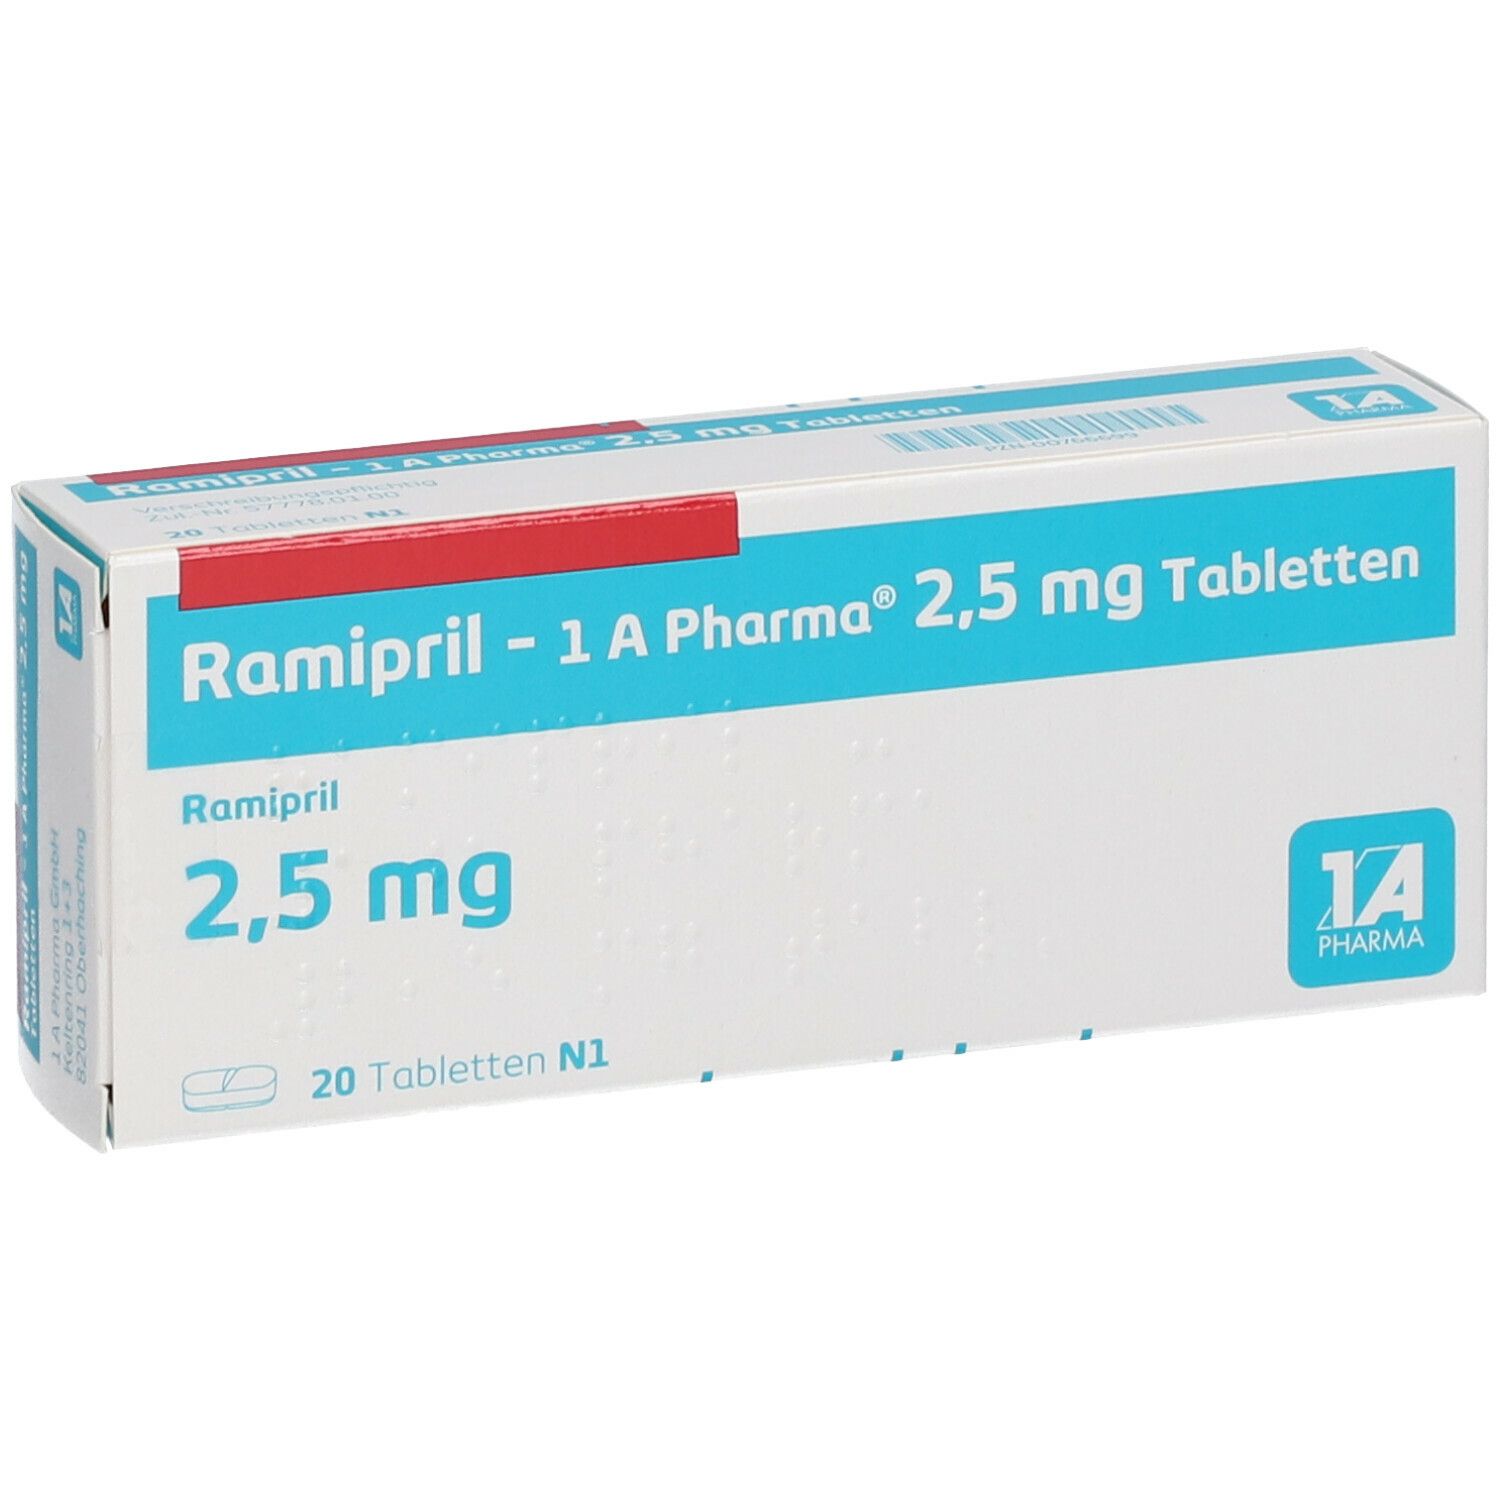 Ramipril 1A Pharma® 2.5 Mg